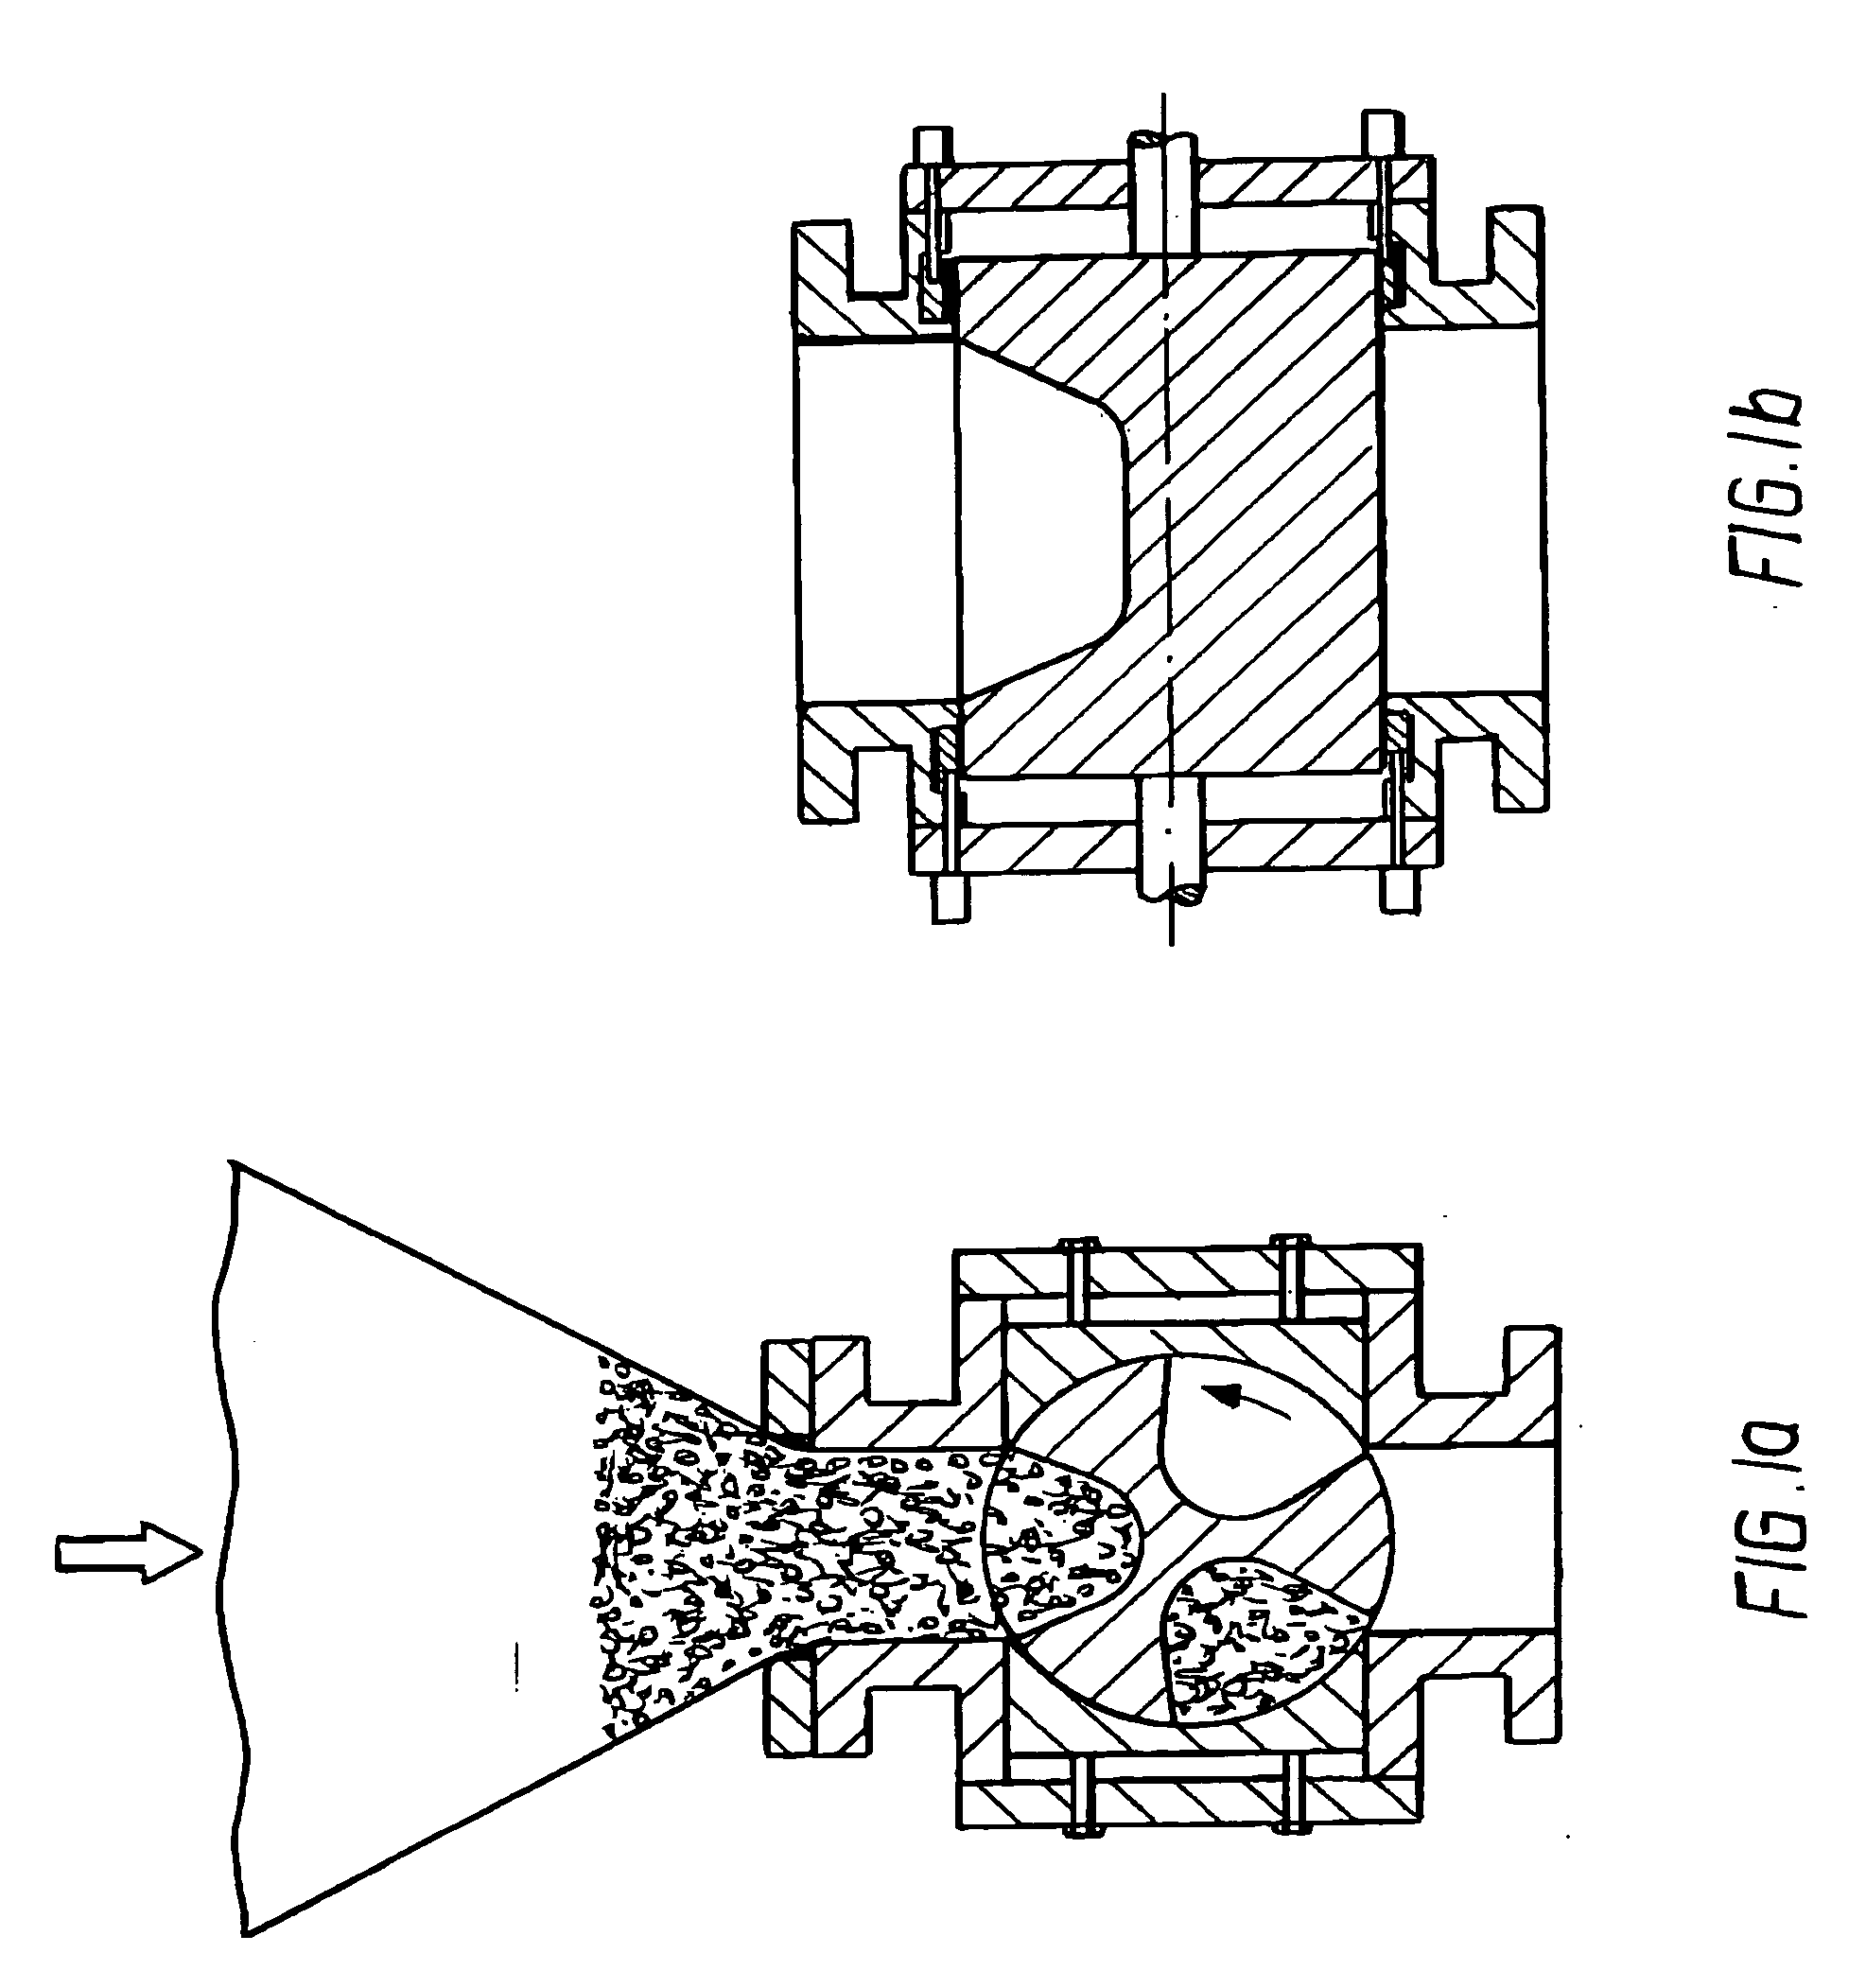 Rotary airlock valve